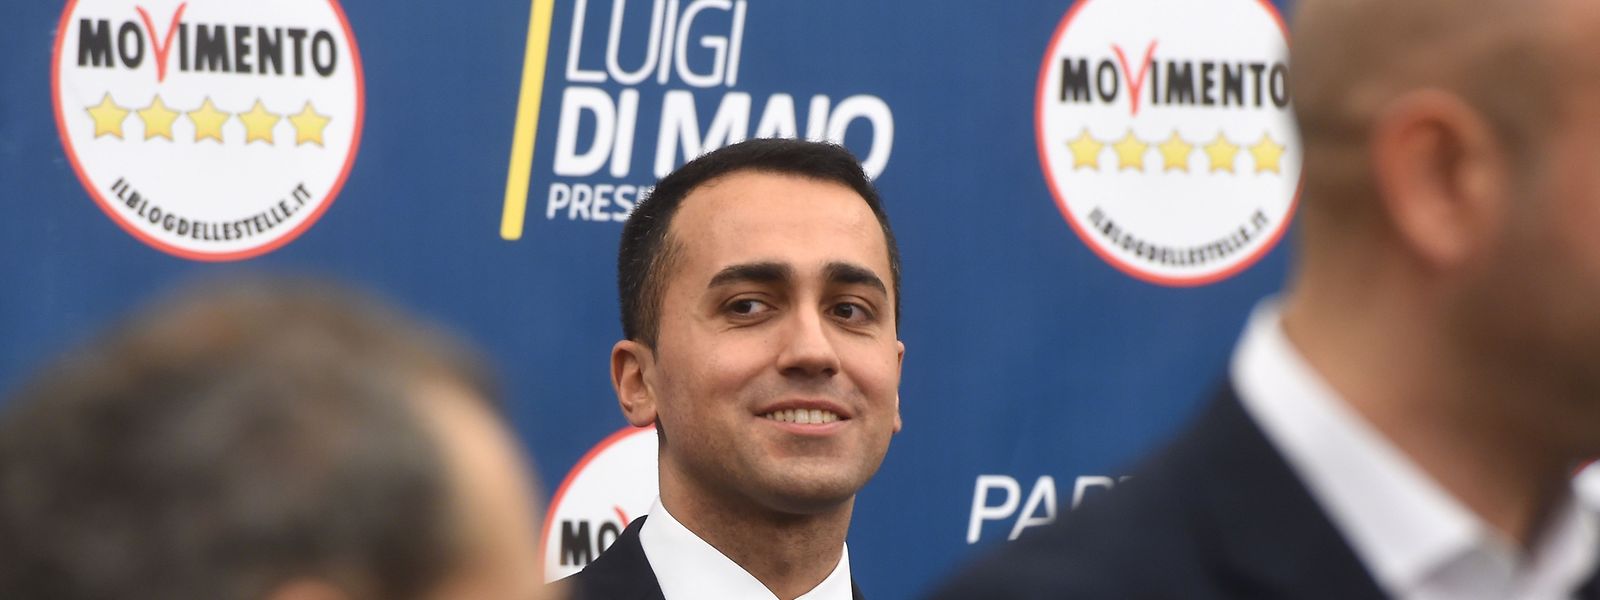  Luigi Di Maio ist mit seiner Fünf-Sterne-Bewegung auf 32 Prozent gekommen.